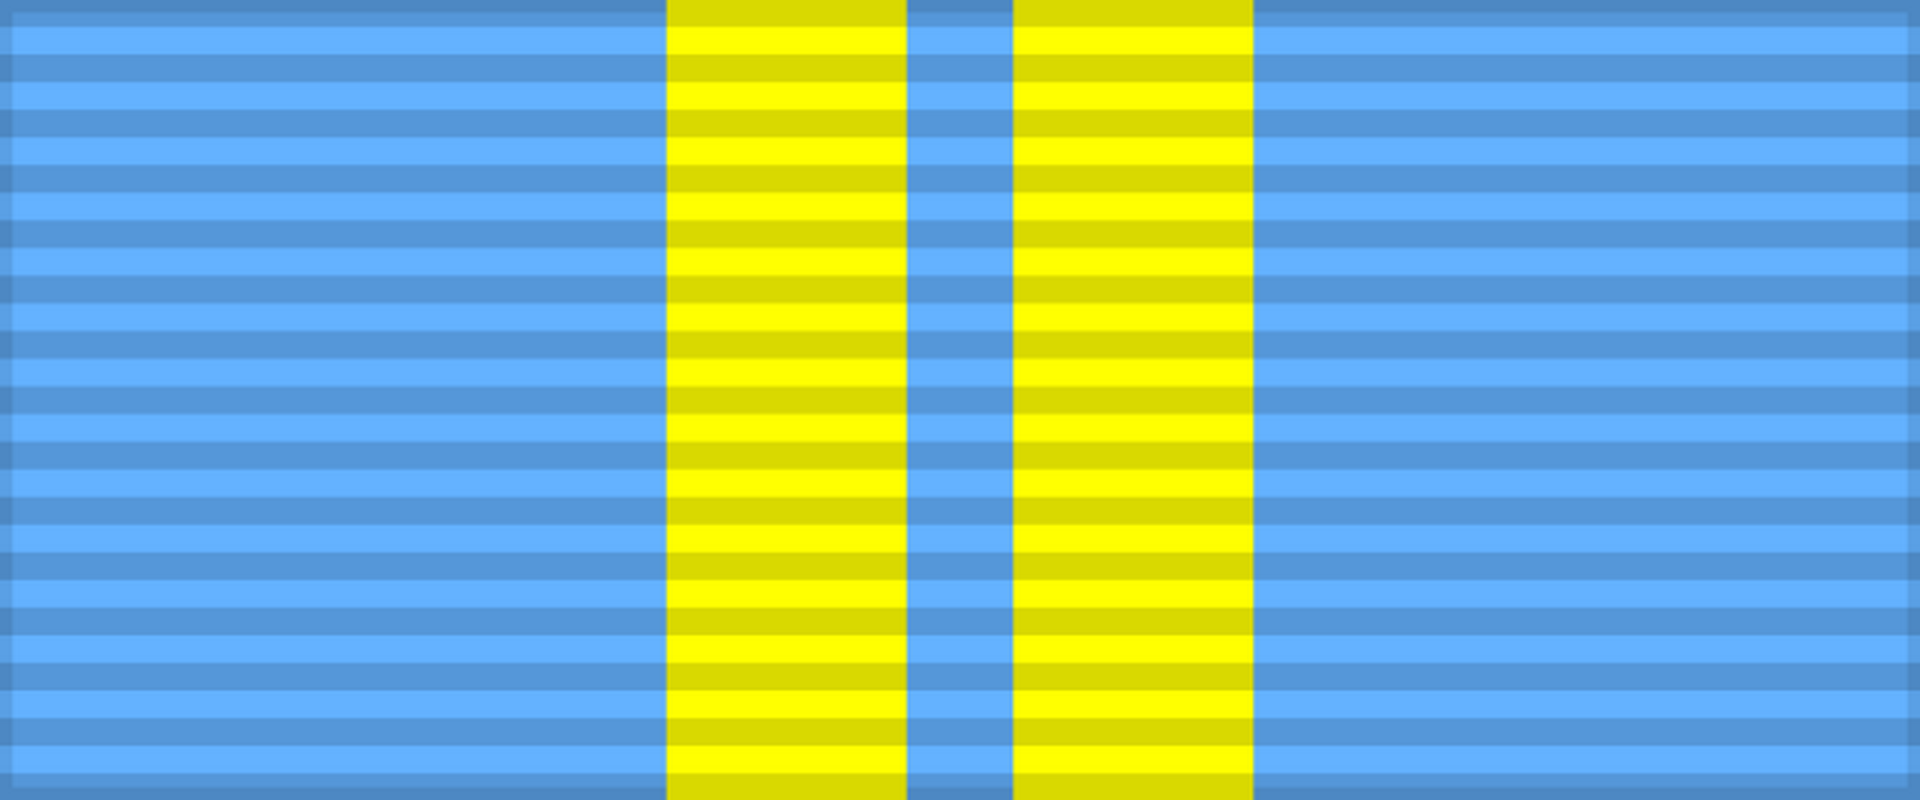 Лента ордена «За службу Родине в Вооружённых Силах СССР» 2-й степени. СССР.